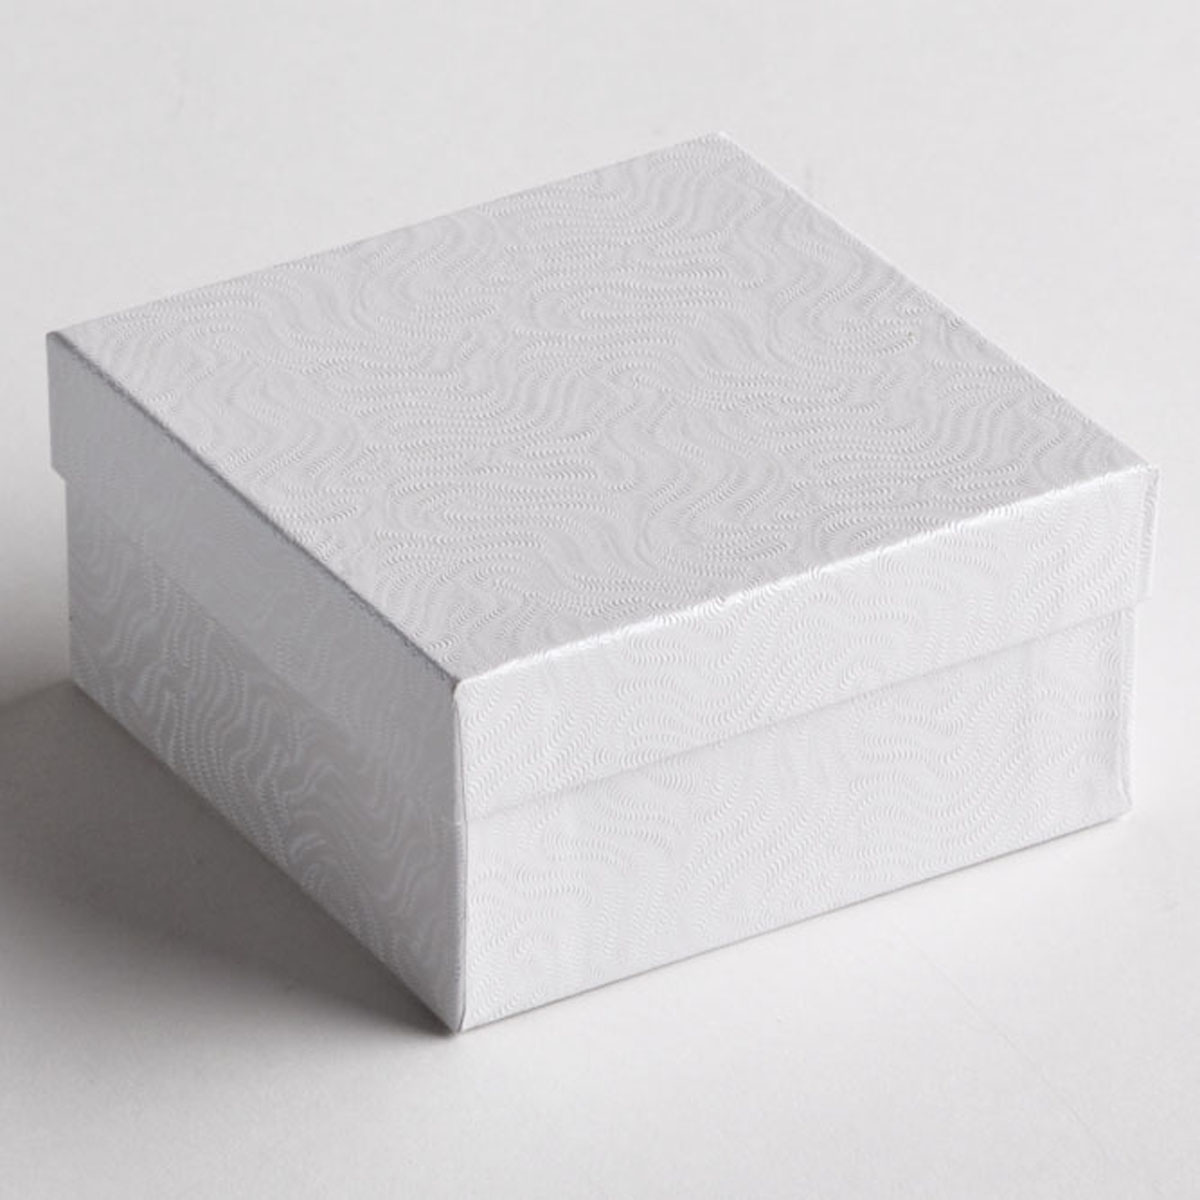 White Swirl Jewelry Boxes (100 pcs.)